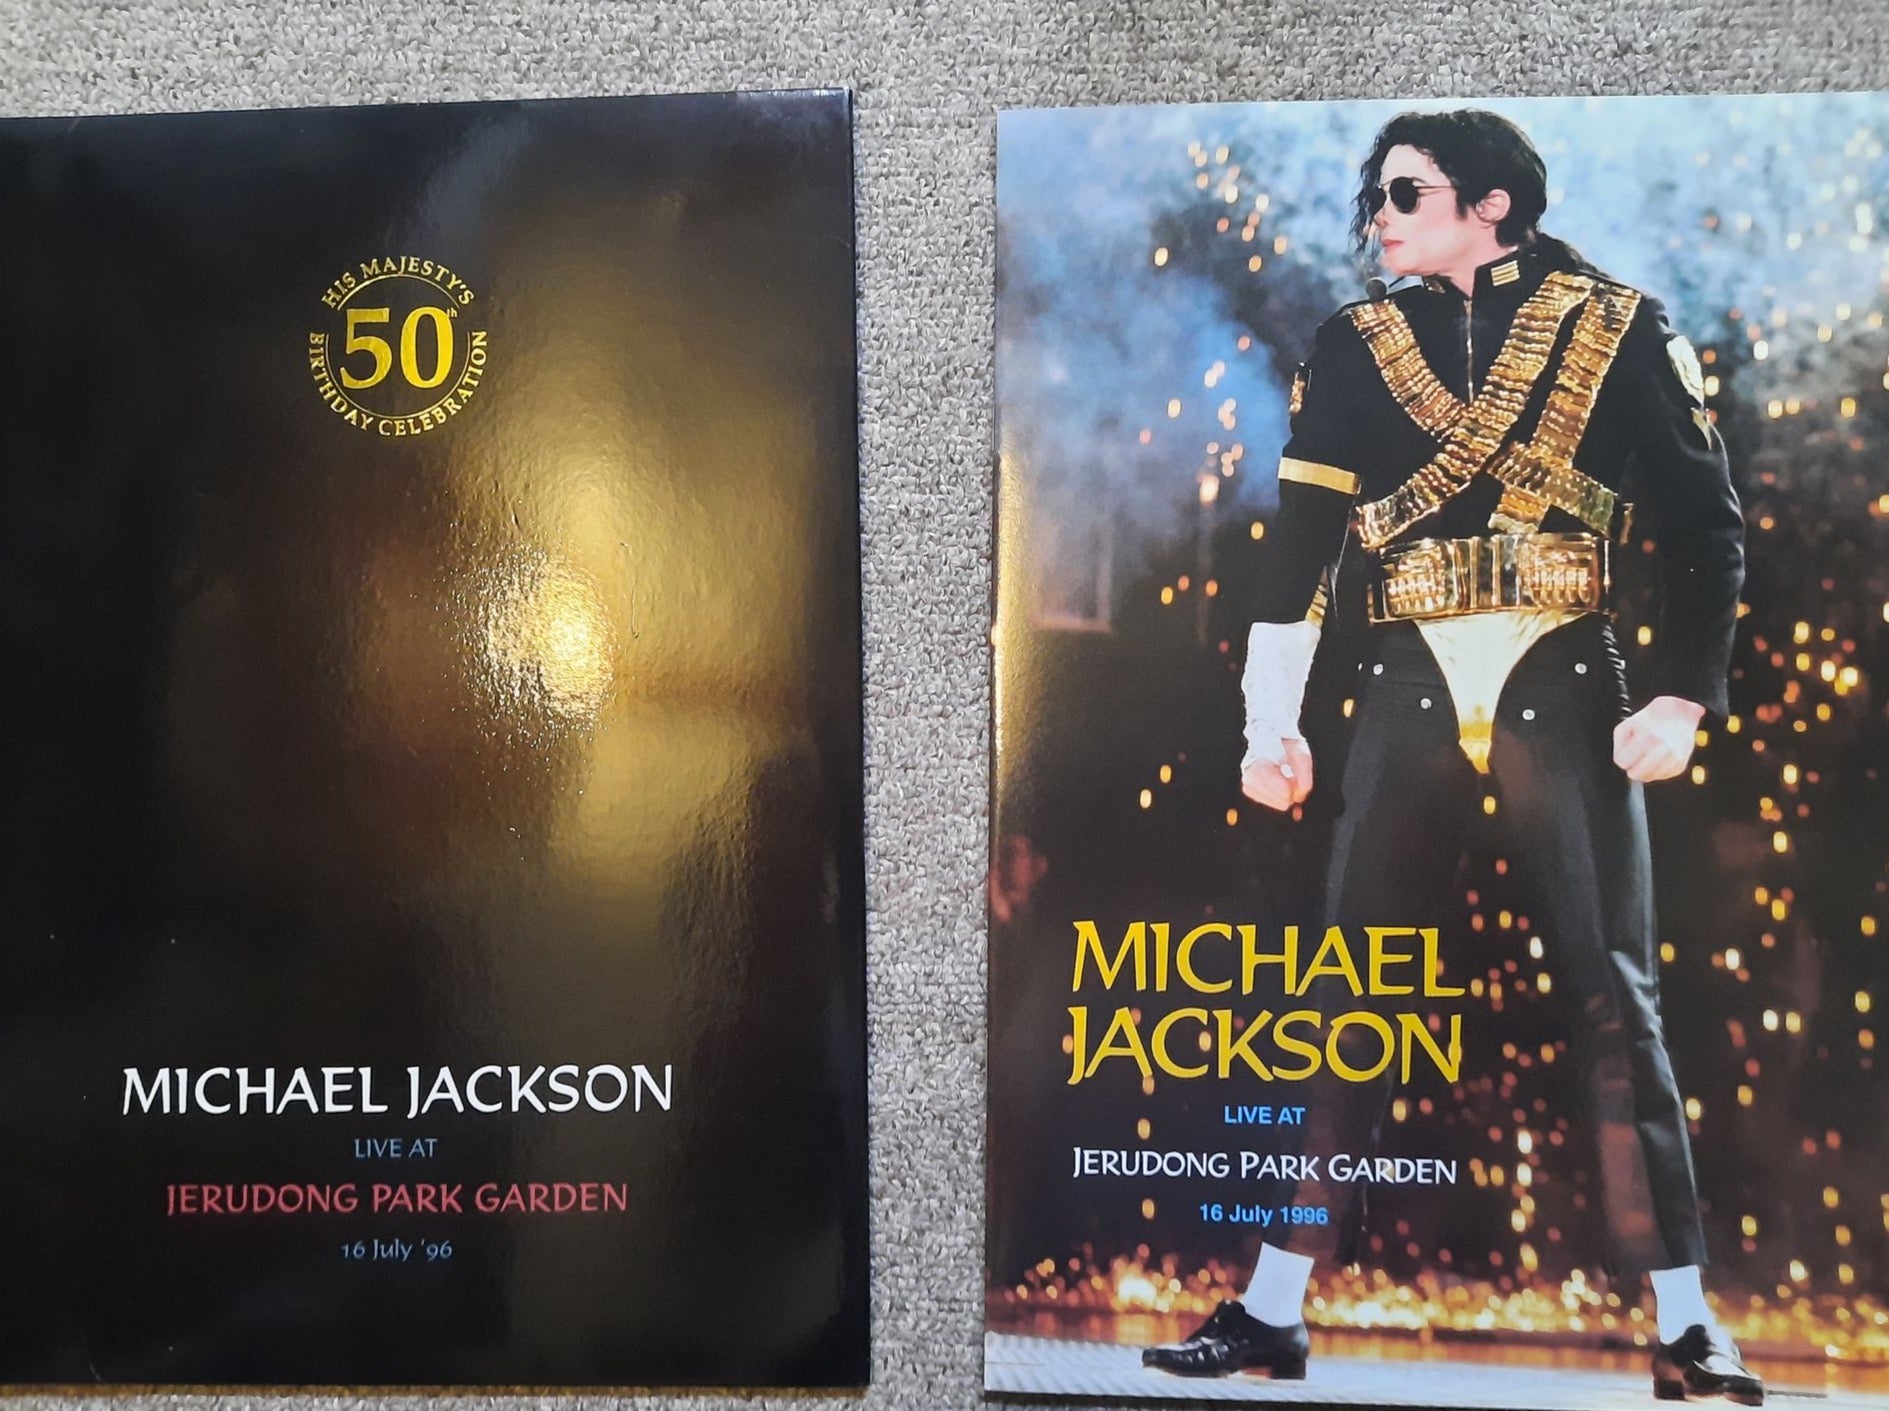 Michael Jackson Vintage Brunei Double CD Set + Booklet of Jerudong Park Concert